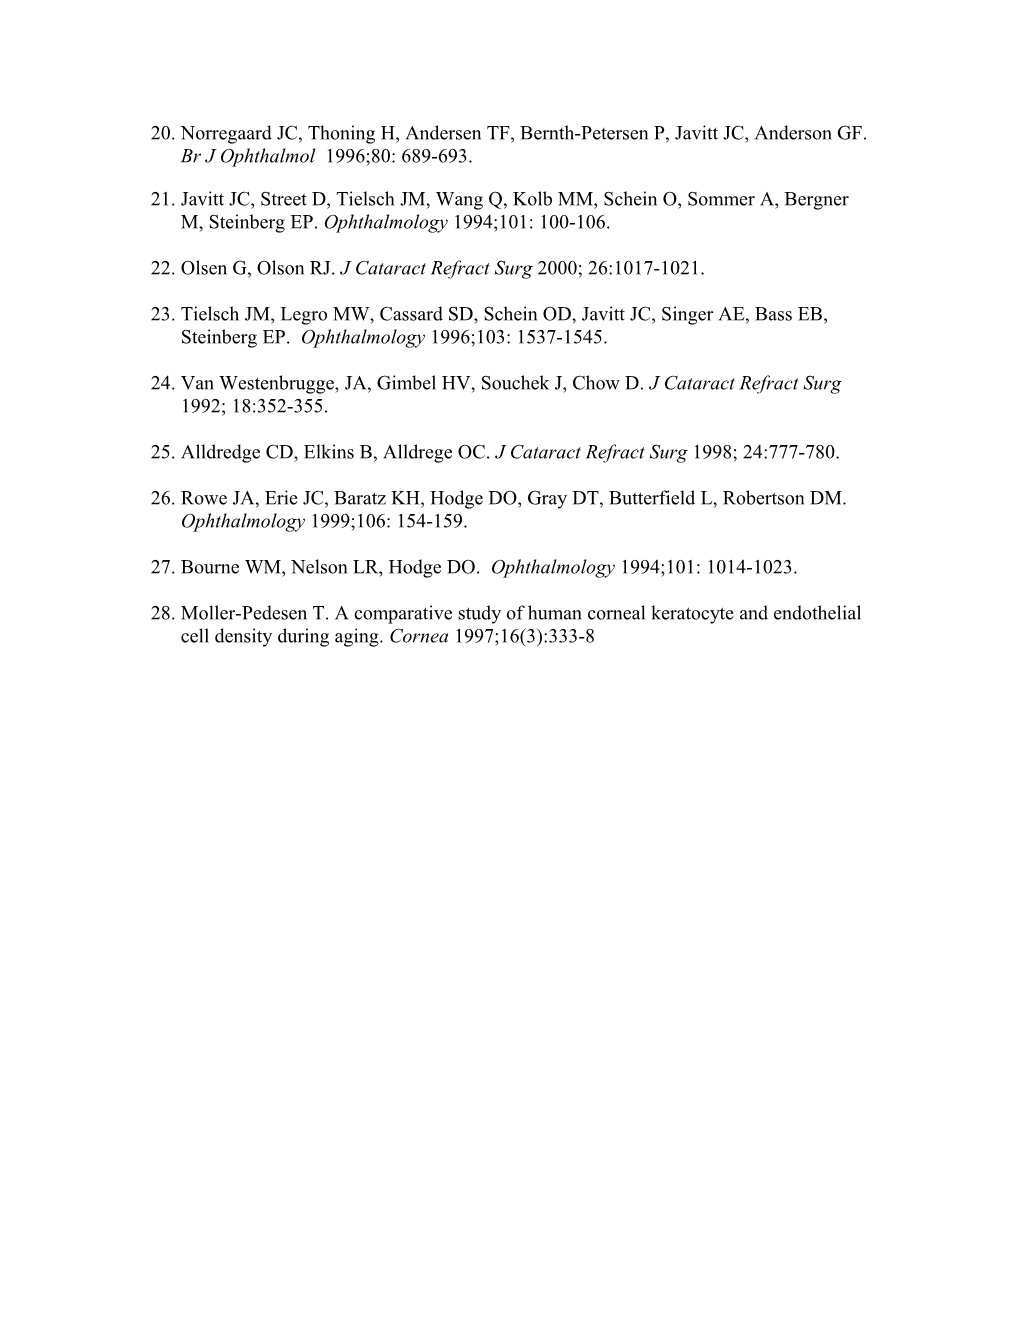 1. Dick HB, Gross S, Tehrani M, Eisenmann D, Pfeiffer N. J Refract Surg 2002; 18(5): 509-18